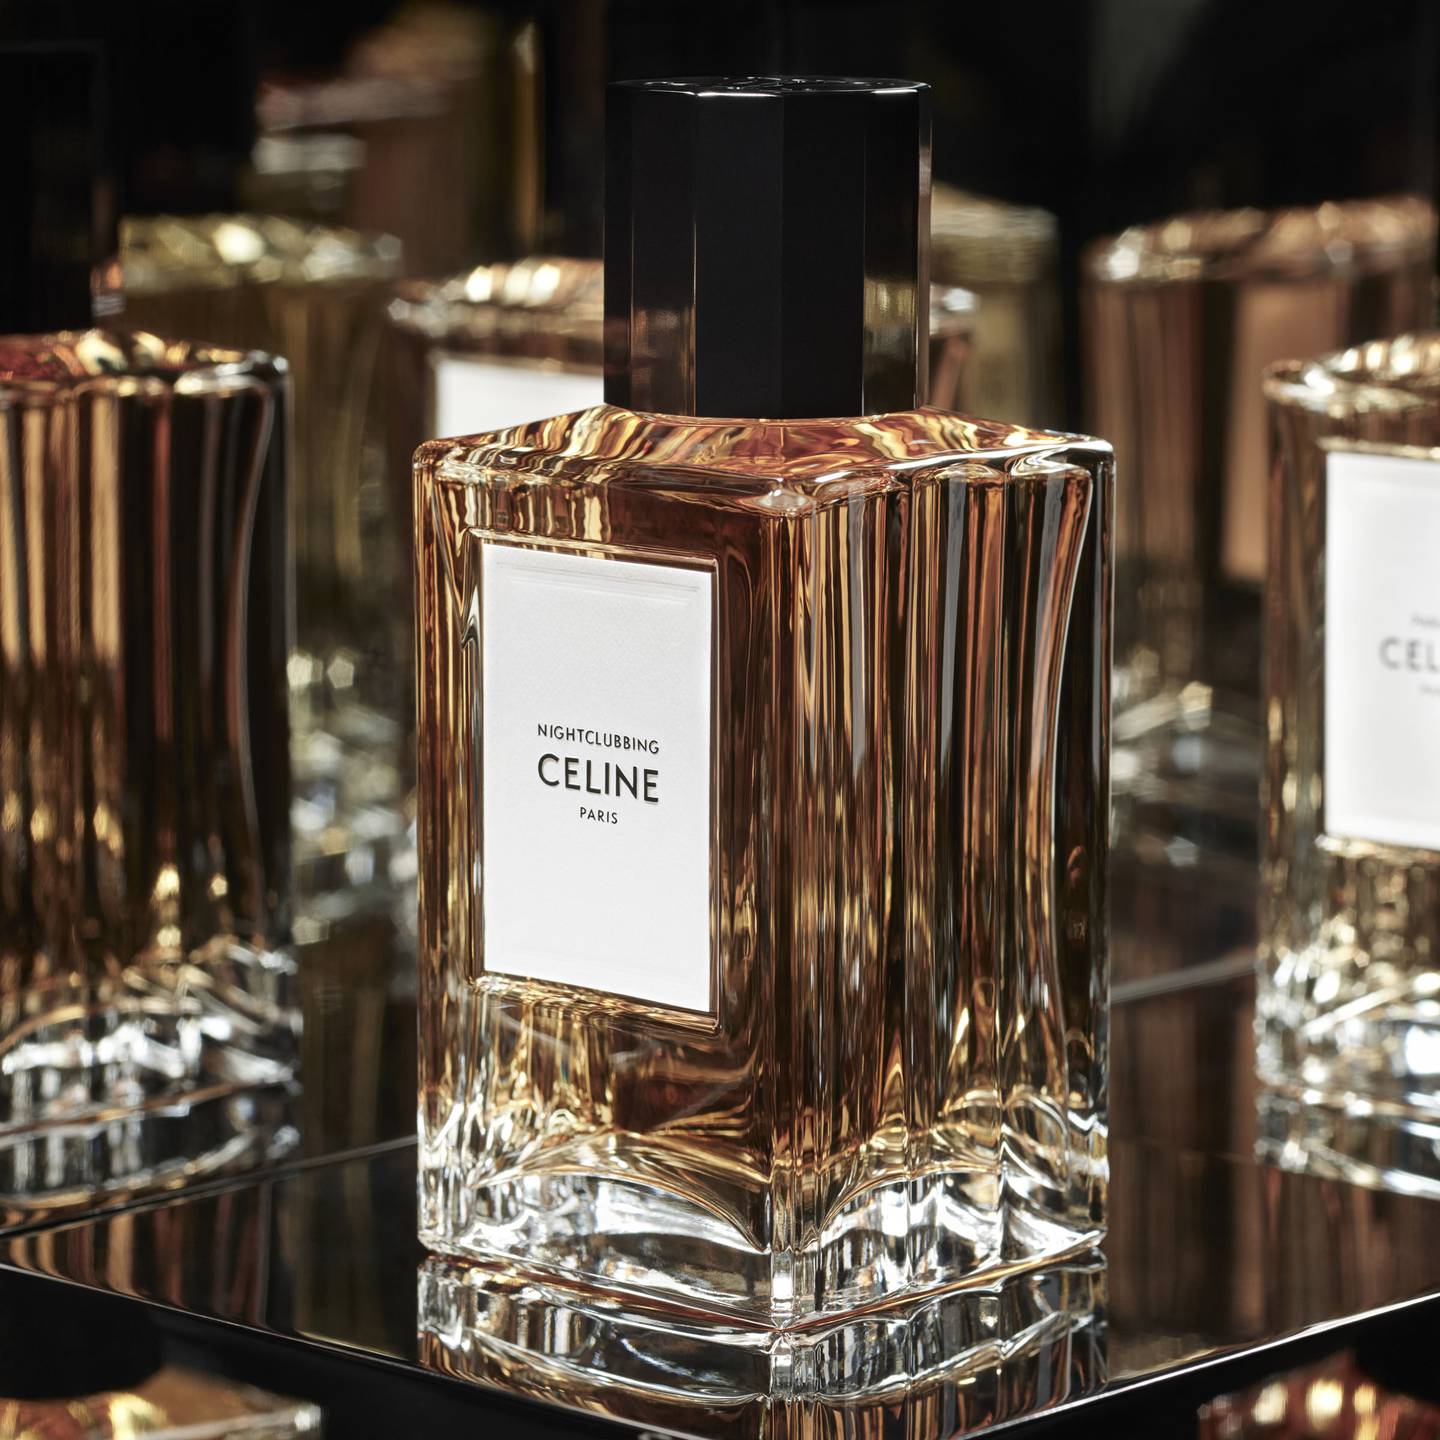 Nightclubbing is one of 11 "haute parfumerie" releases by Hedi Slimane for Celine since 2019. Celine.